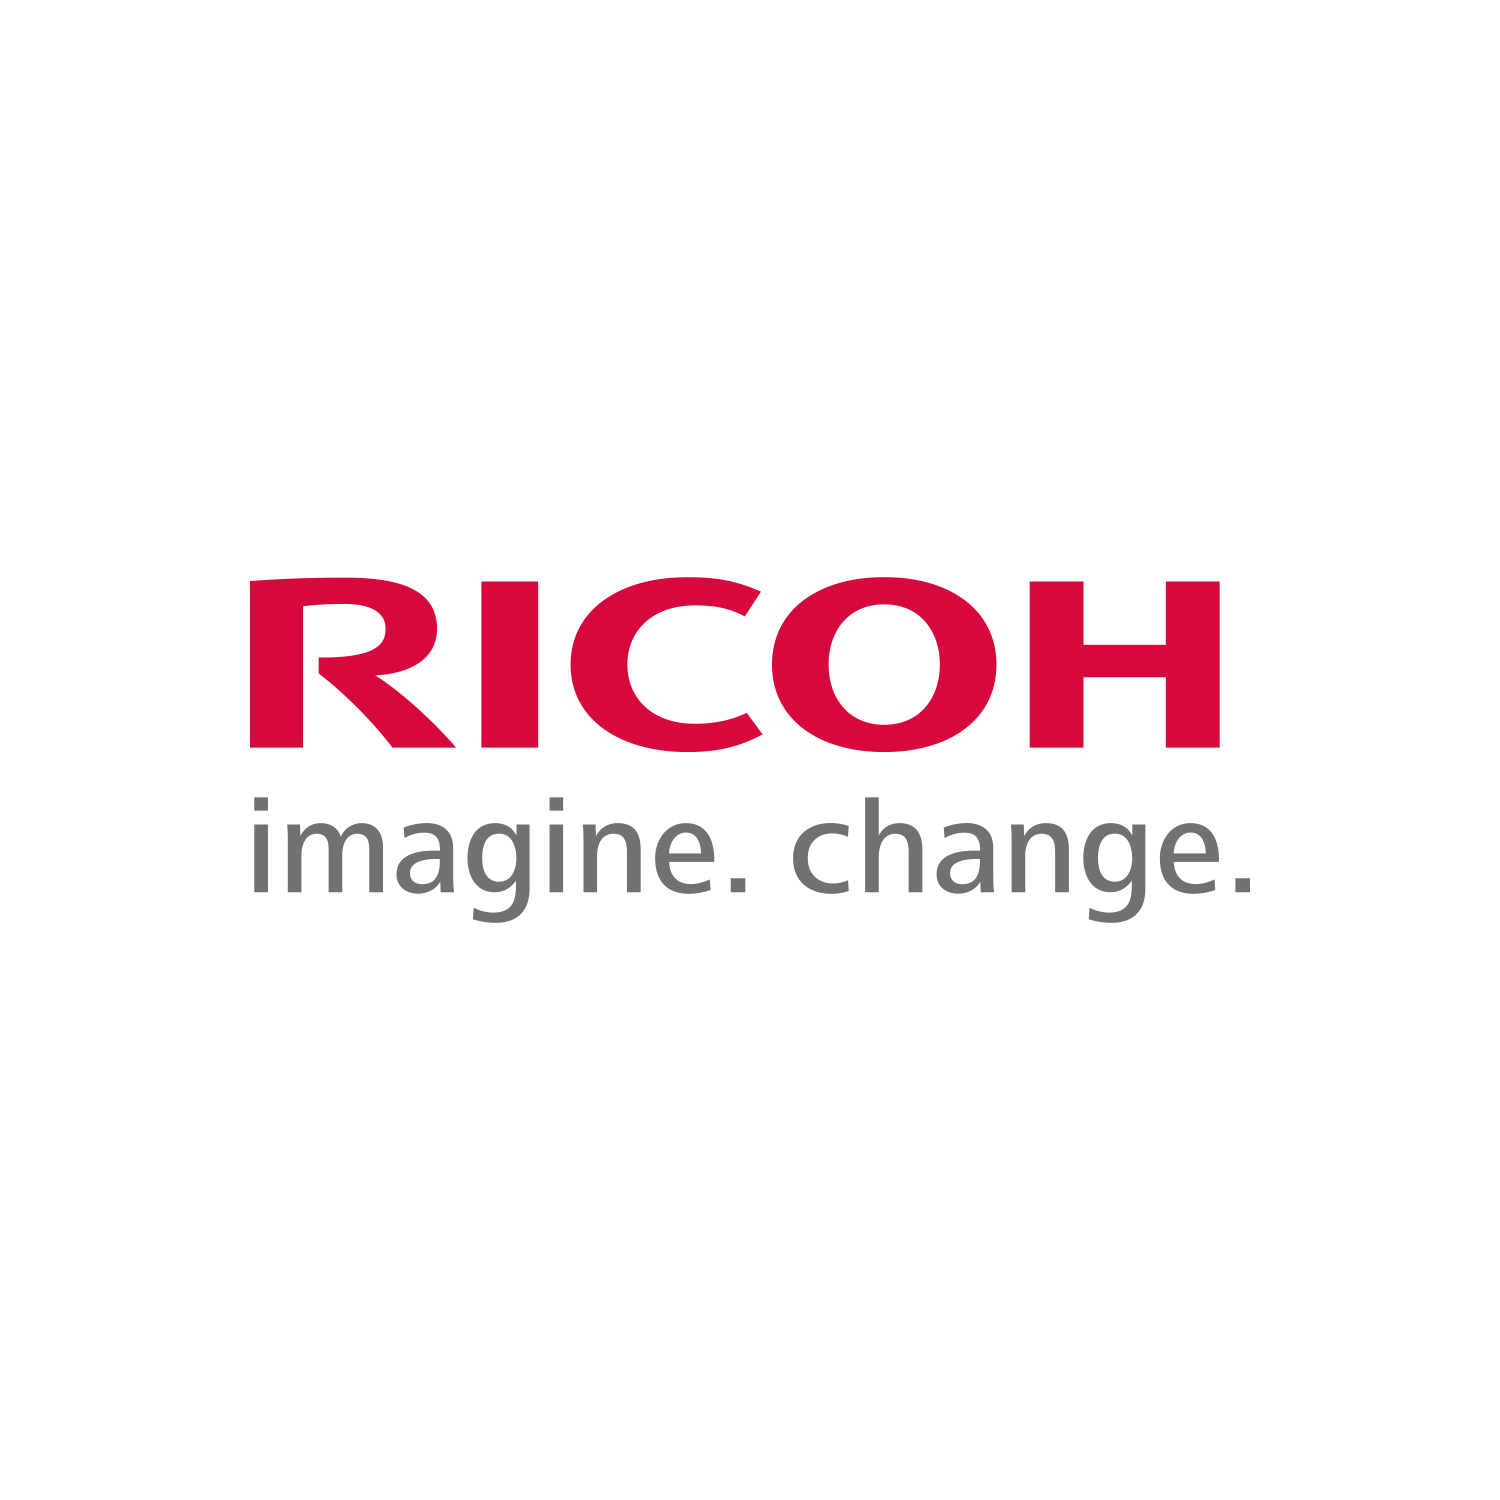 www.ricoh.com